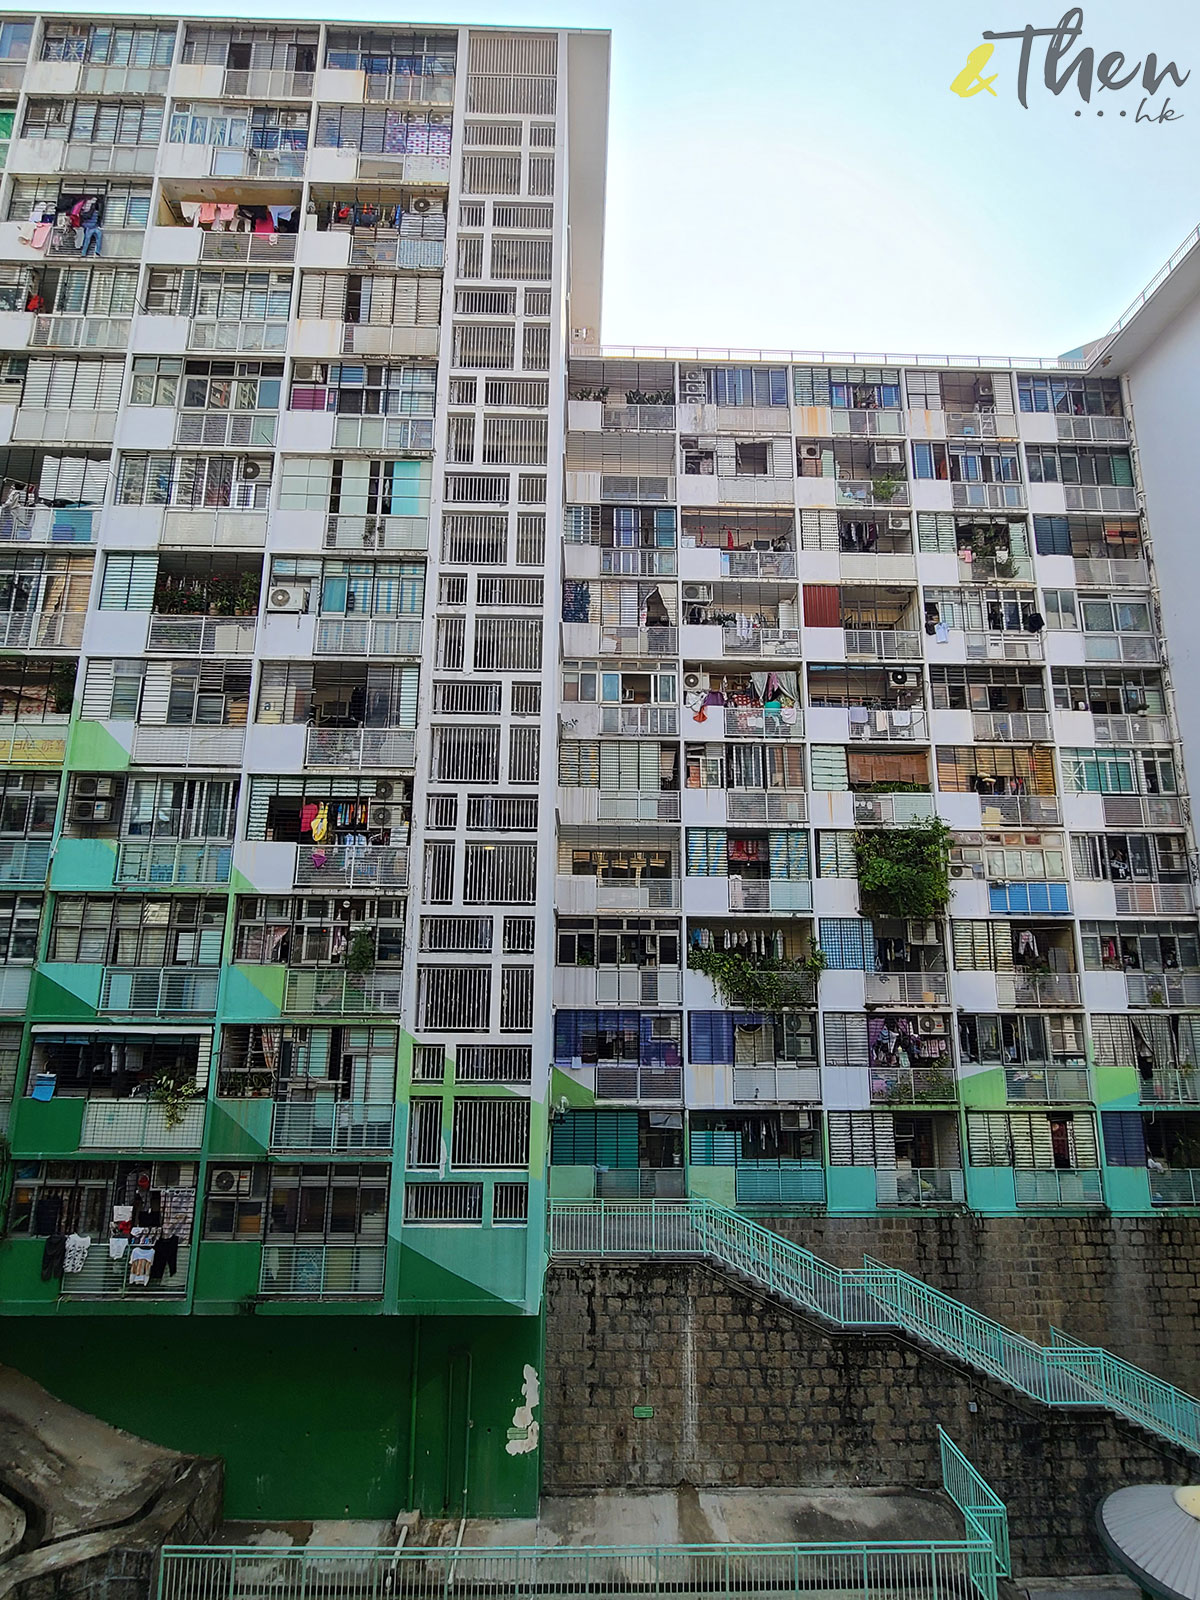 公營房屋 公屋重建 香港人 香港回憶 集體回憶 特色建築 建築 西環邨 外牆